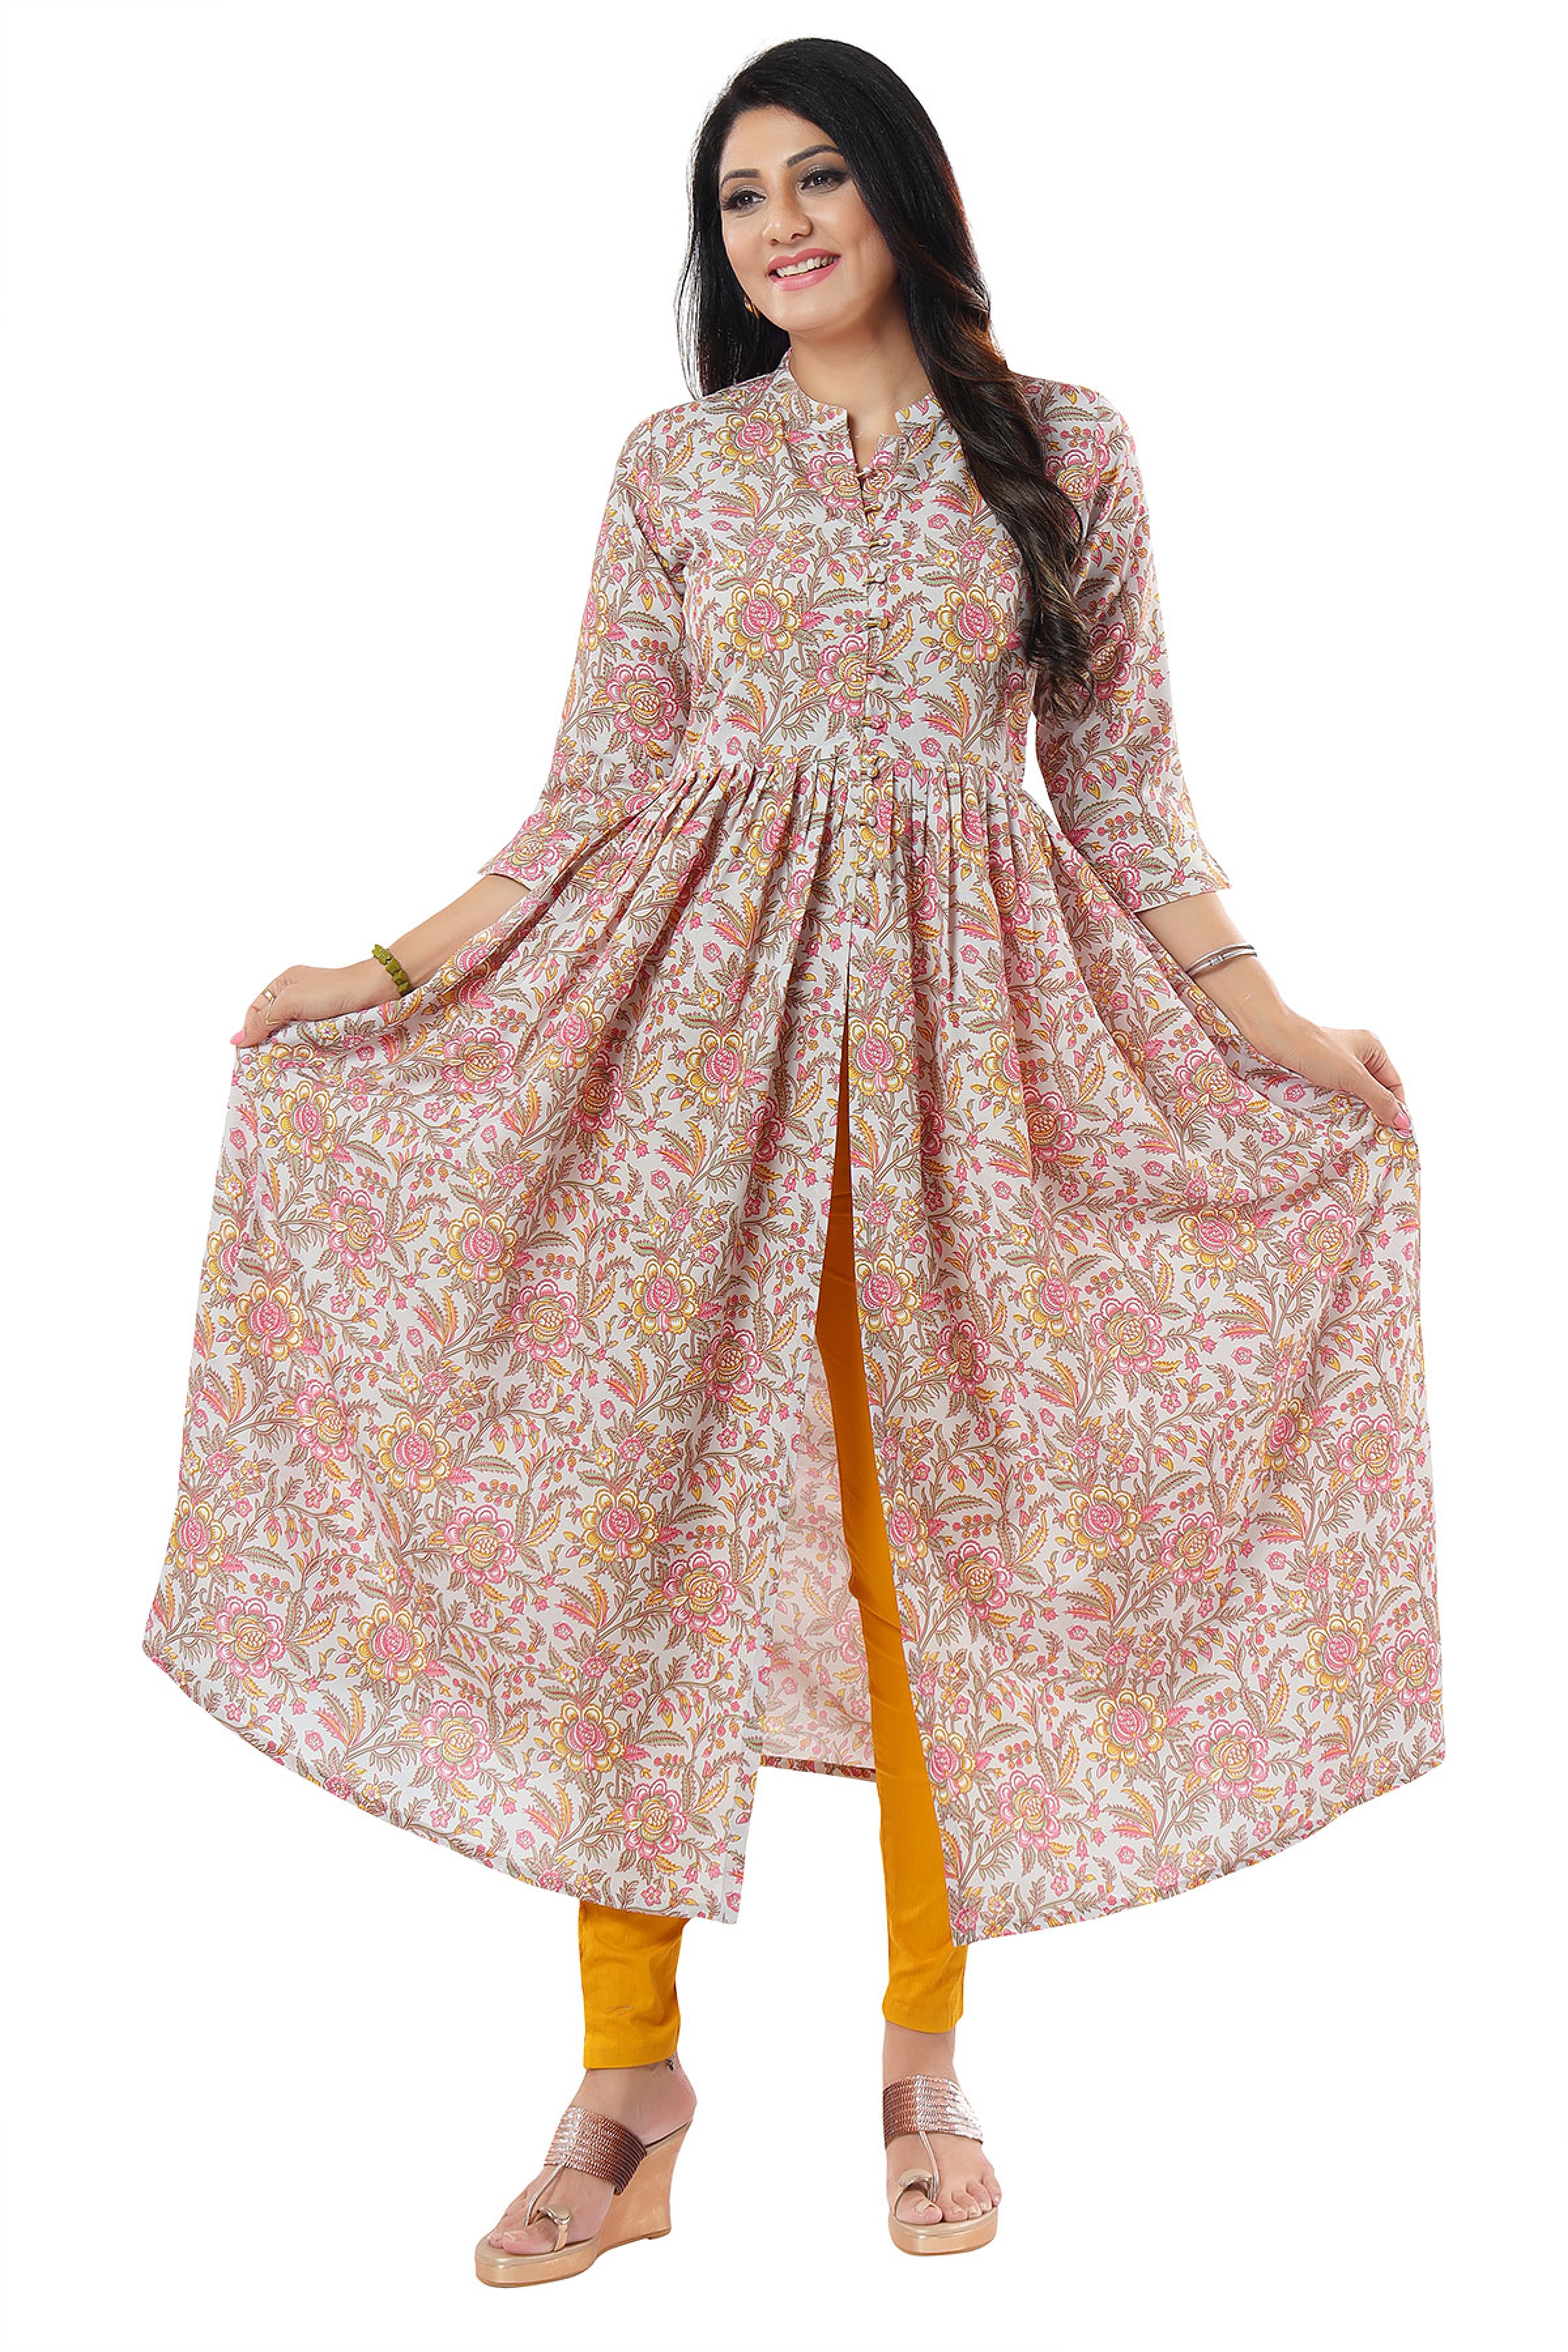 LEEVA SIGNATURE  Jaipuri Cotton fabric print with stitching patterns  stylish long kurtis  Salwar Kameez Wholesaler  Kurtis Wholesaler  Sarees